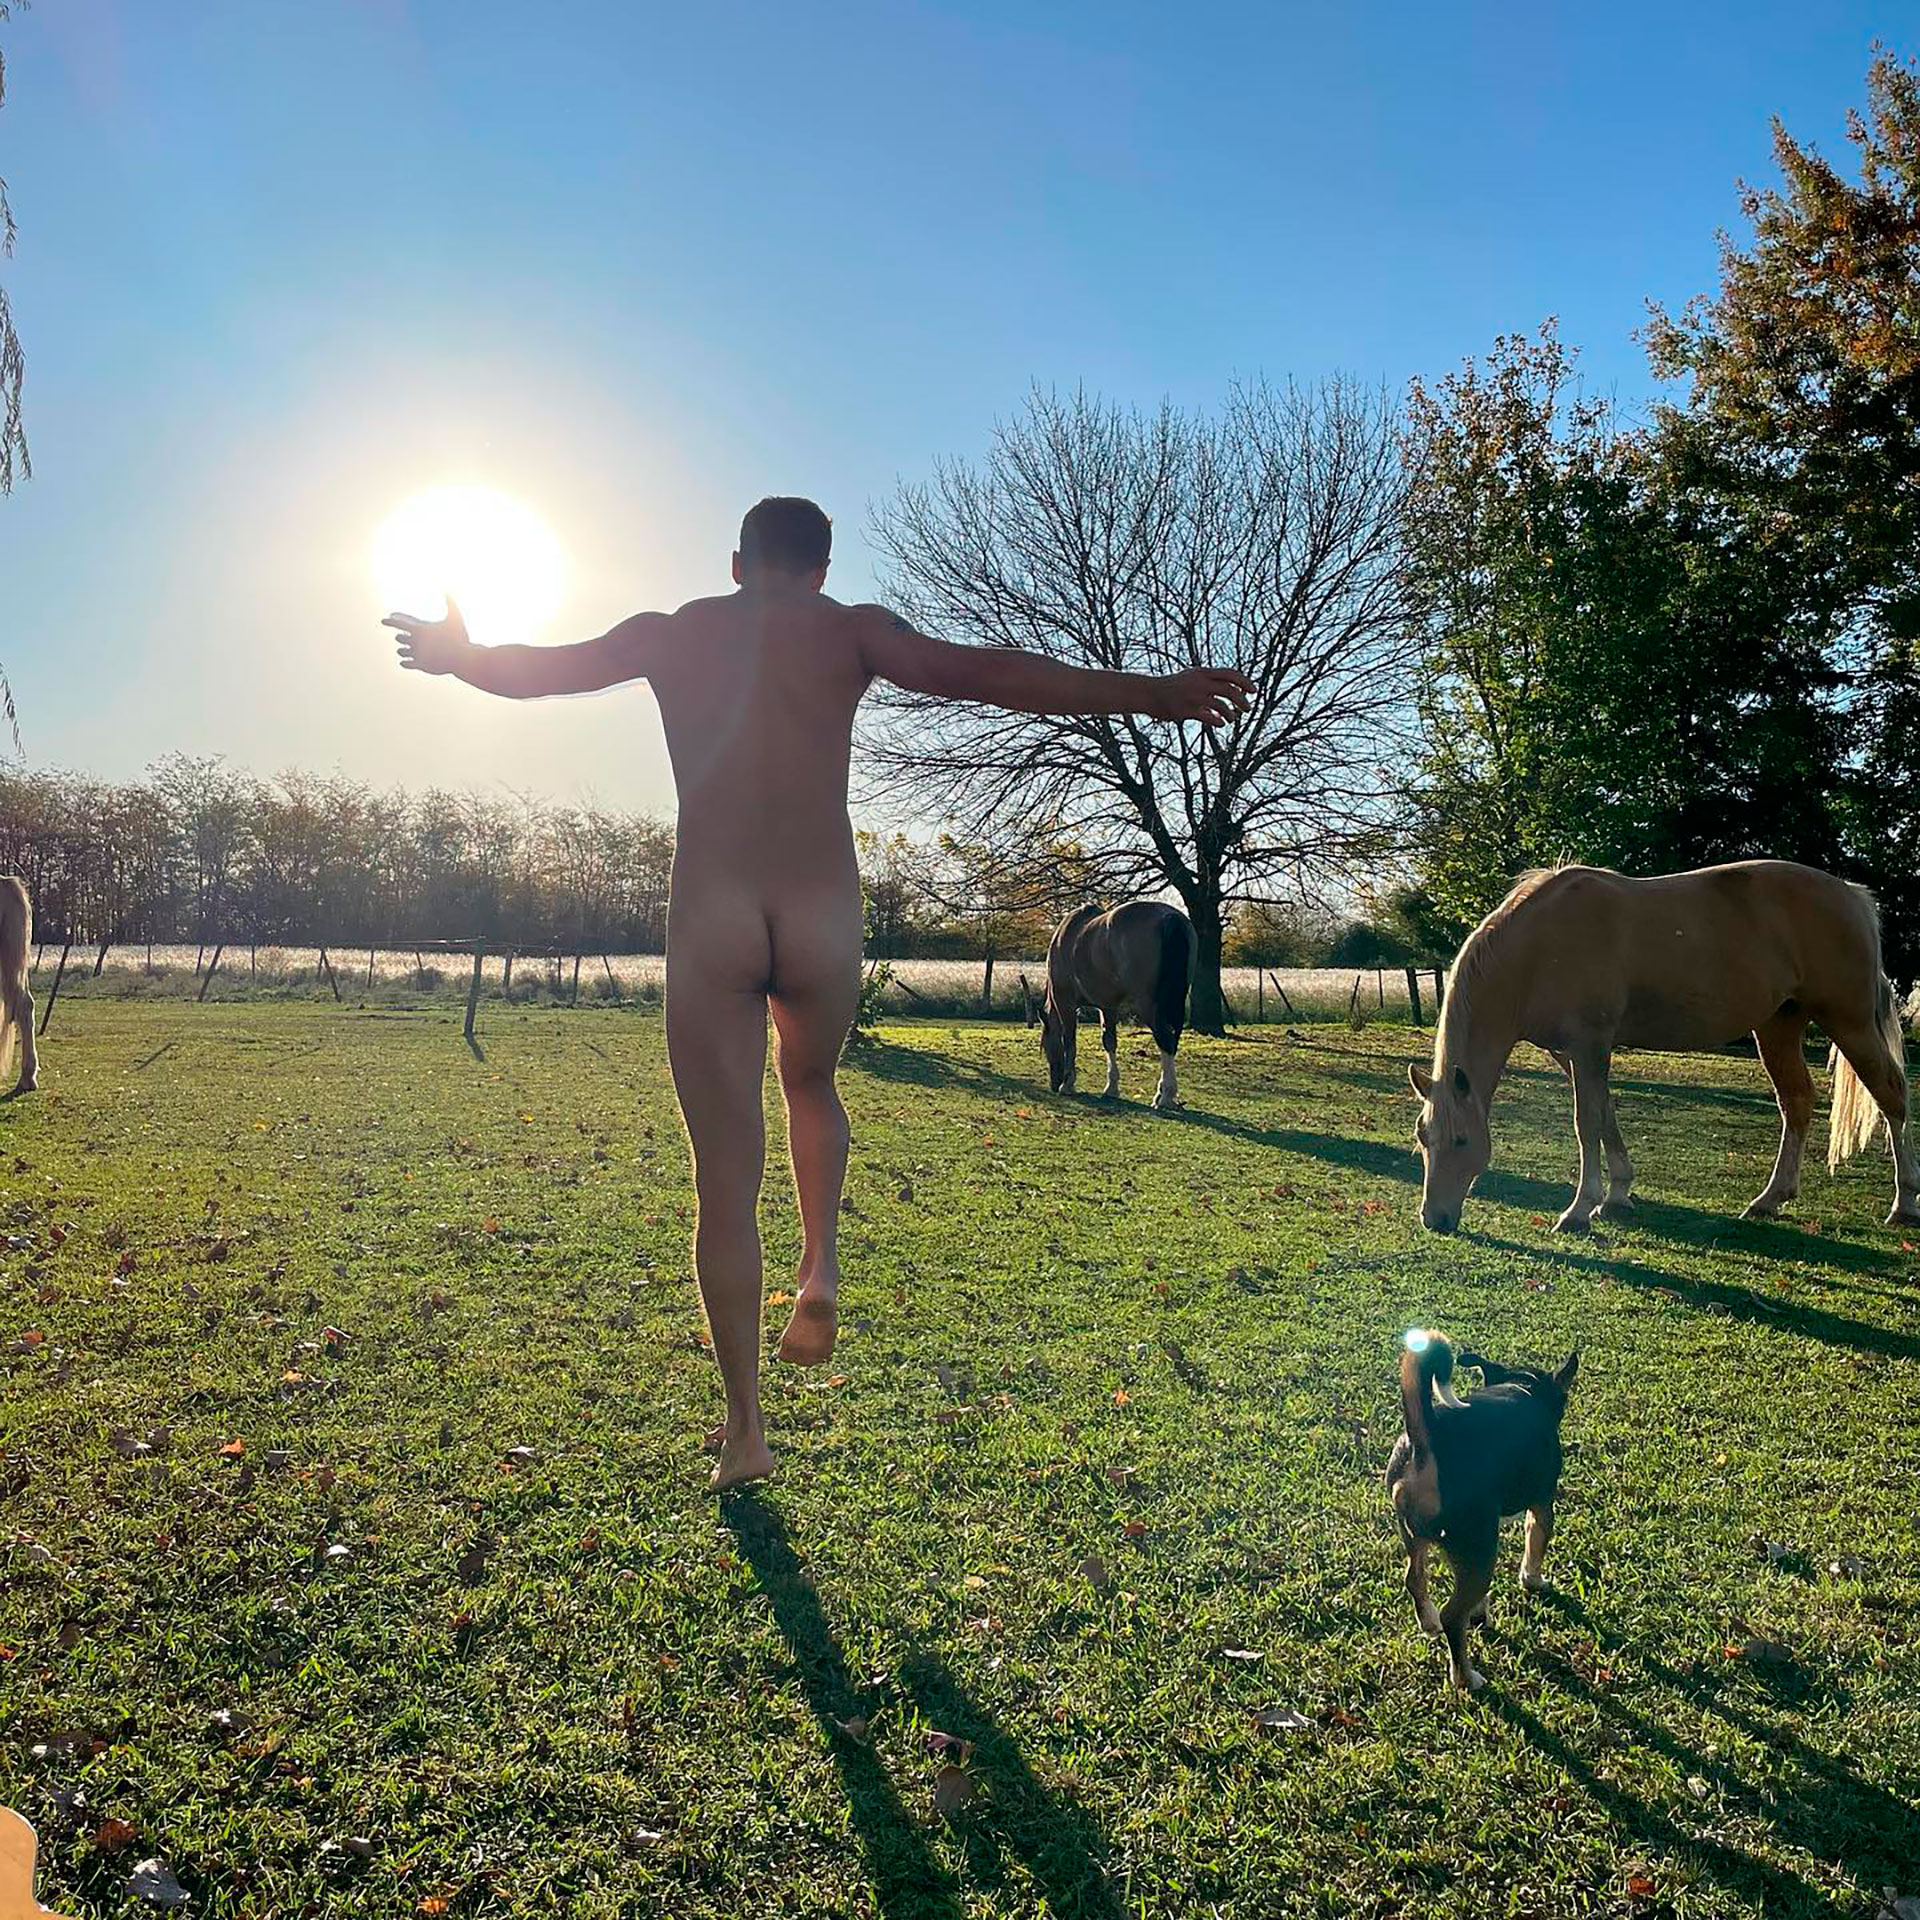 Esteban Lamothe festejó su cumpleaños desnudo (Instagram)